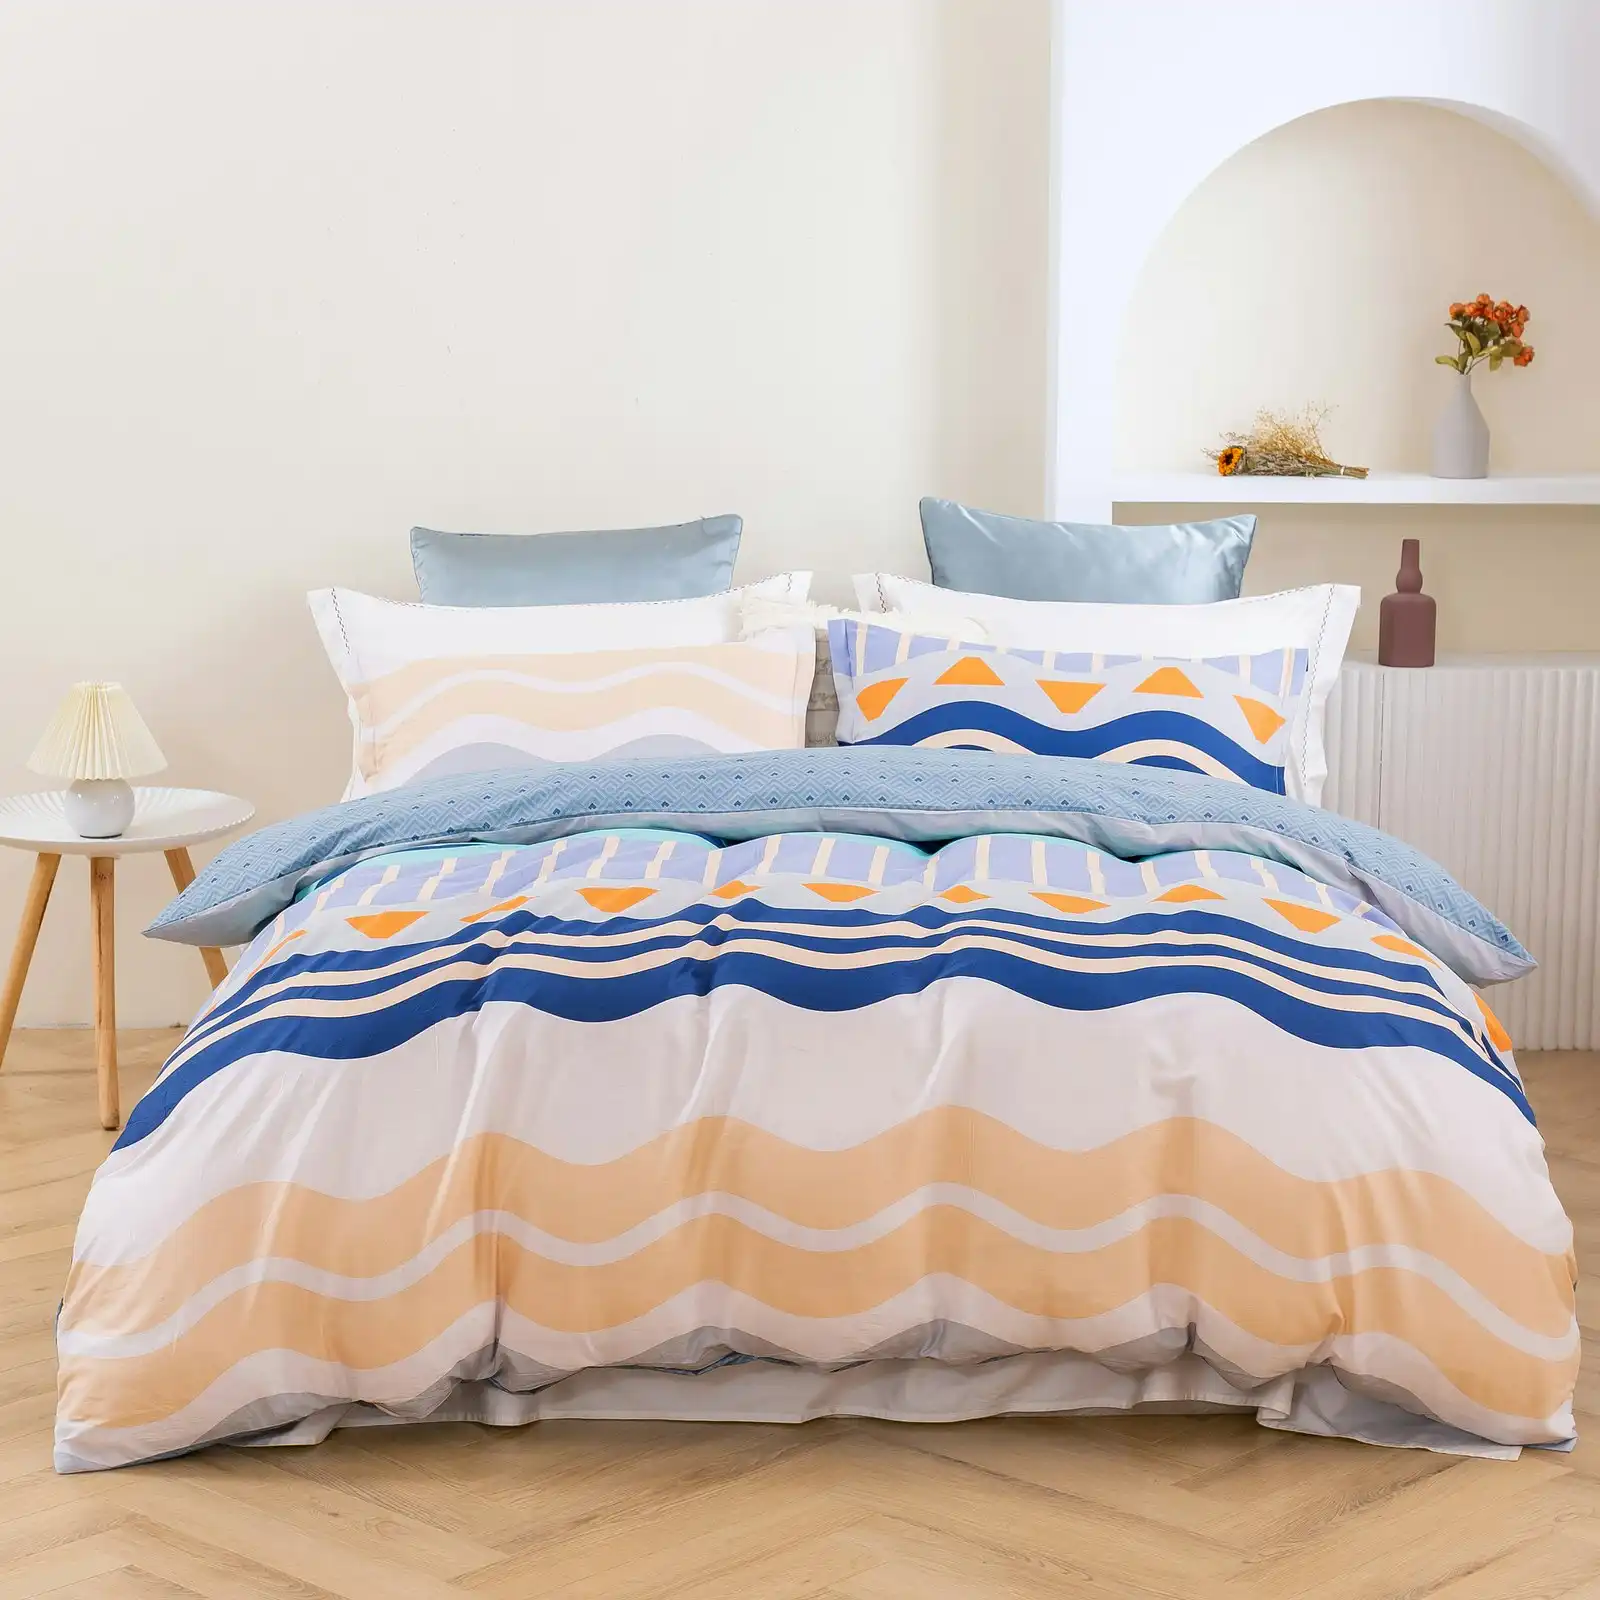 Dreamaker Capri 100% Cotton Reversible Quilt Cover Set Queen Bed